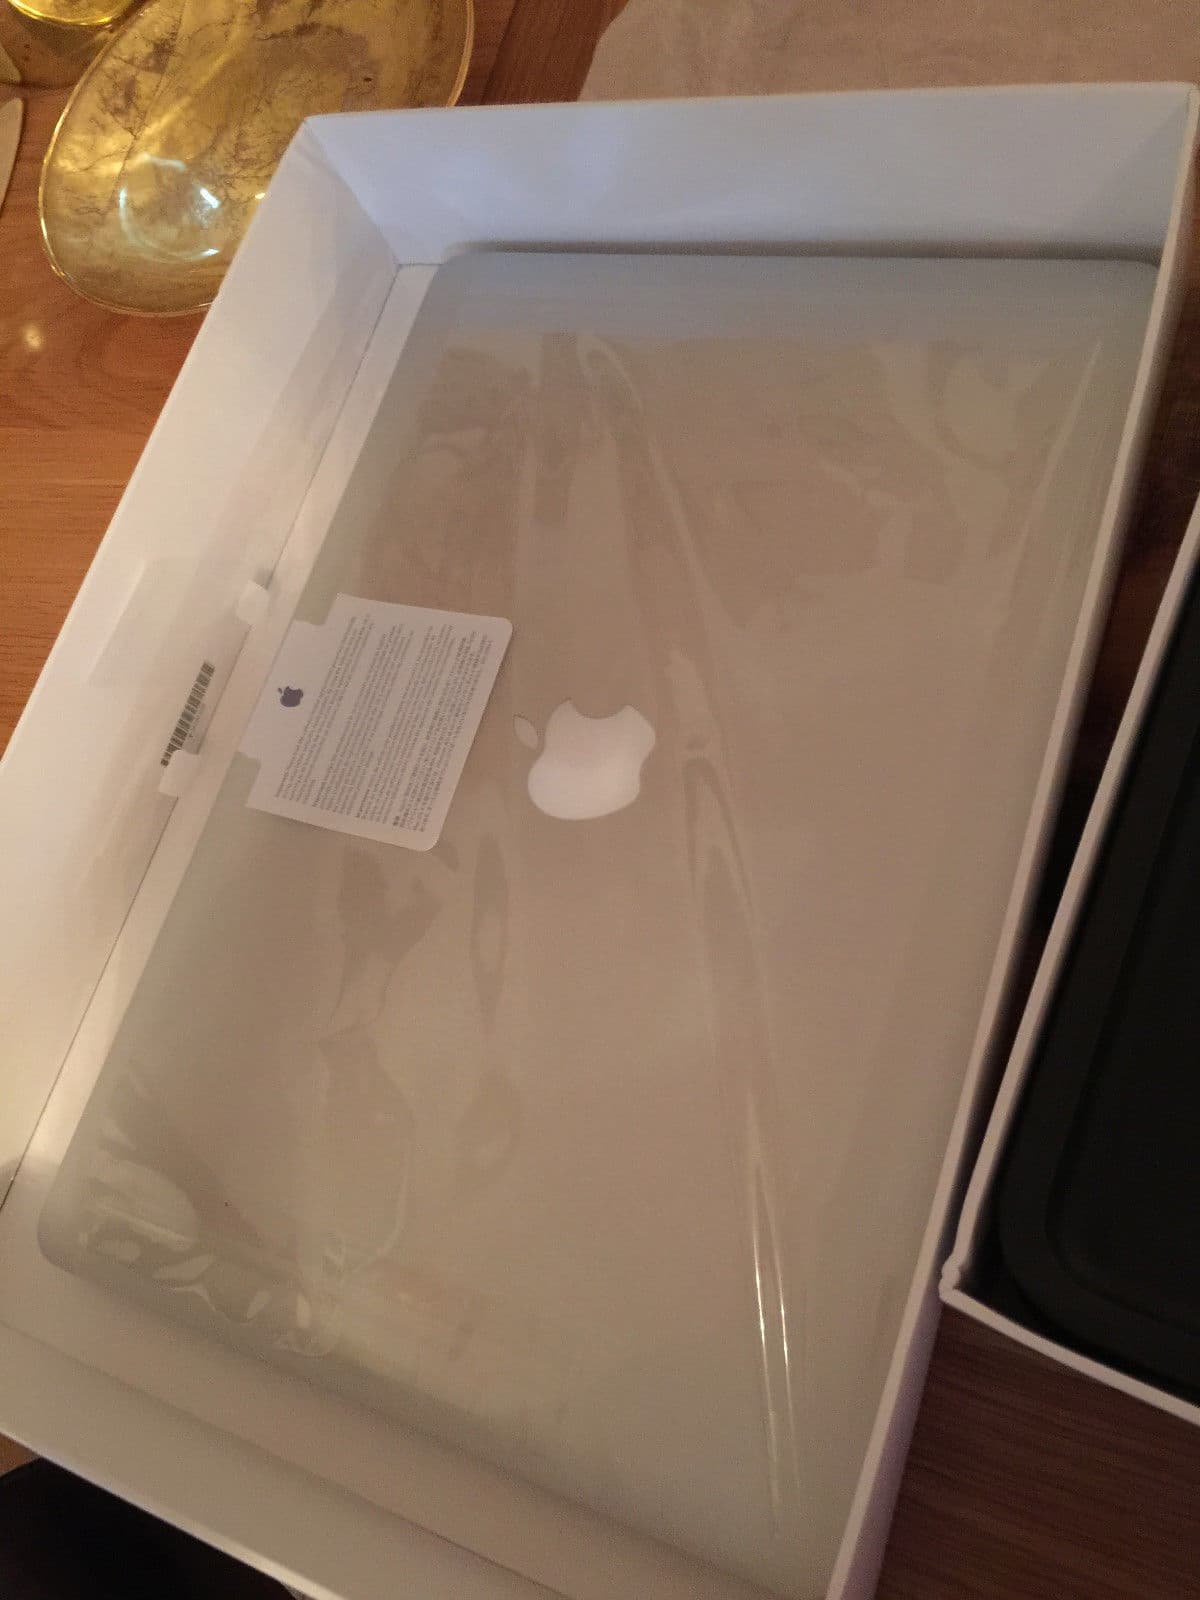 BUY 2 GET 1 FREE Apple_s MacBook Pro 15_4inch Laptop Retina